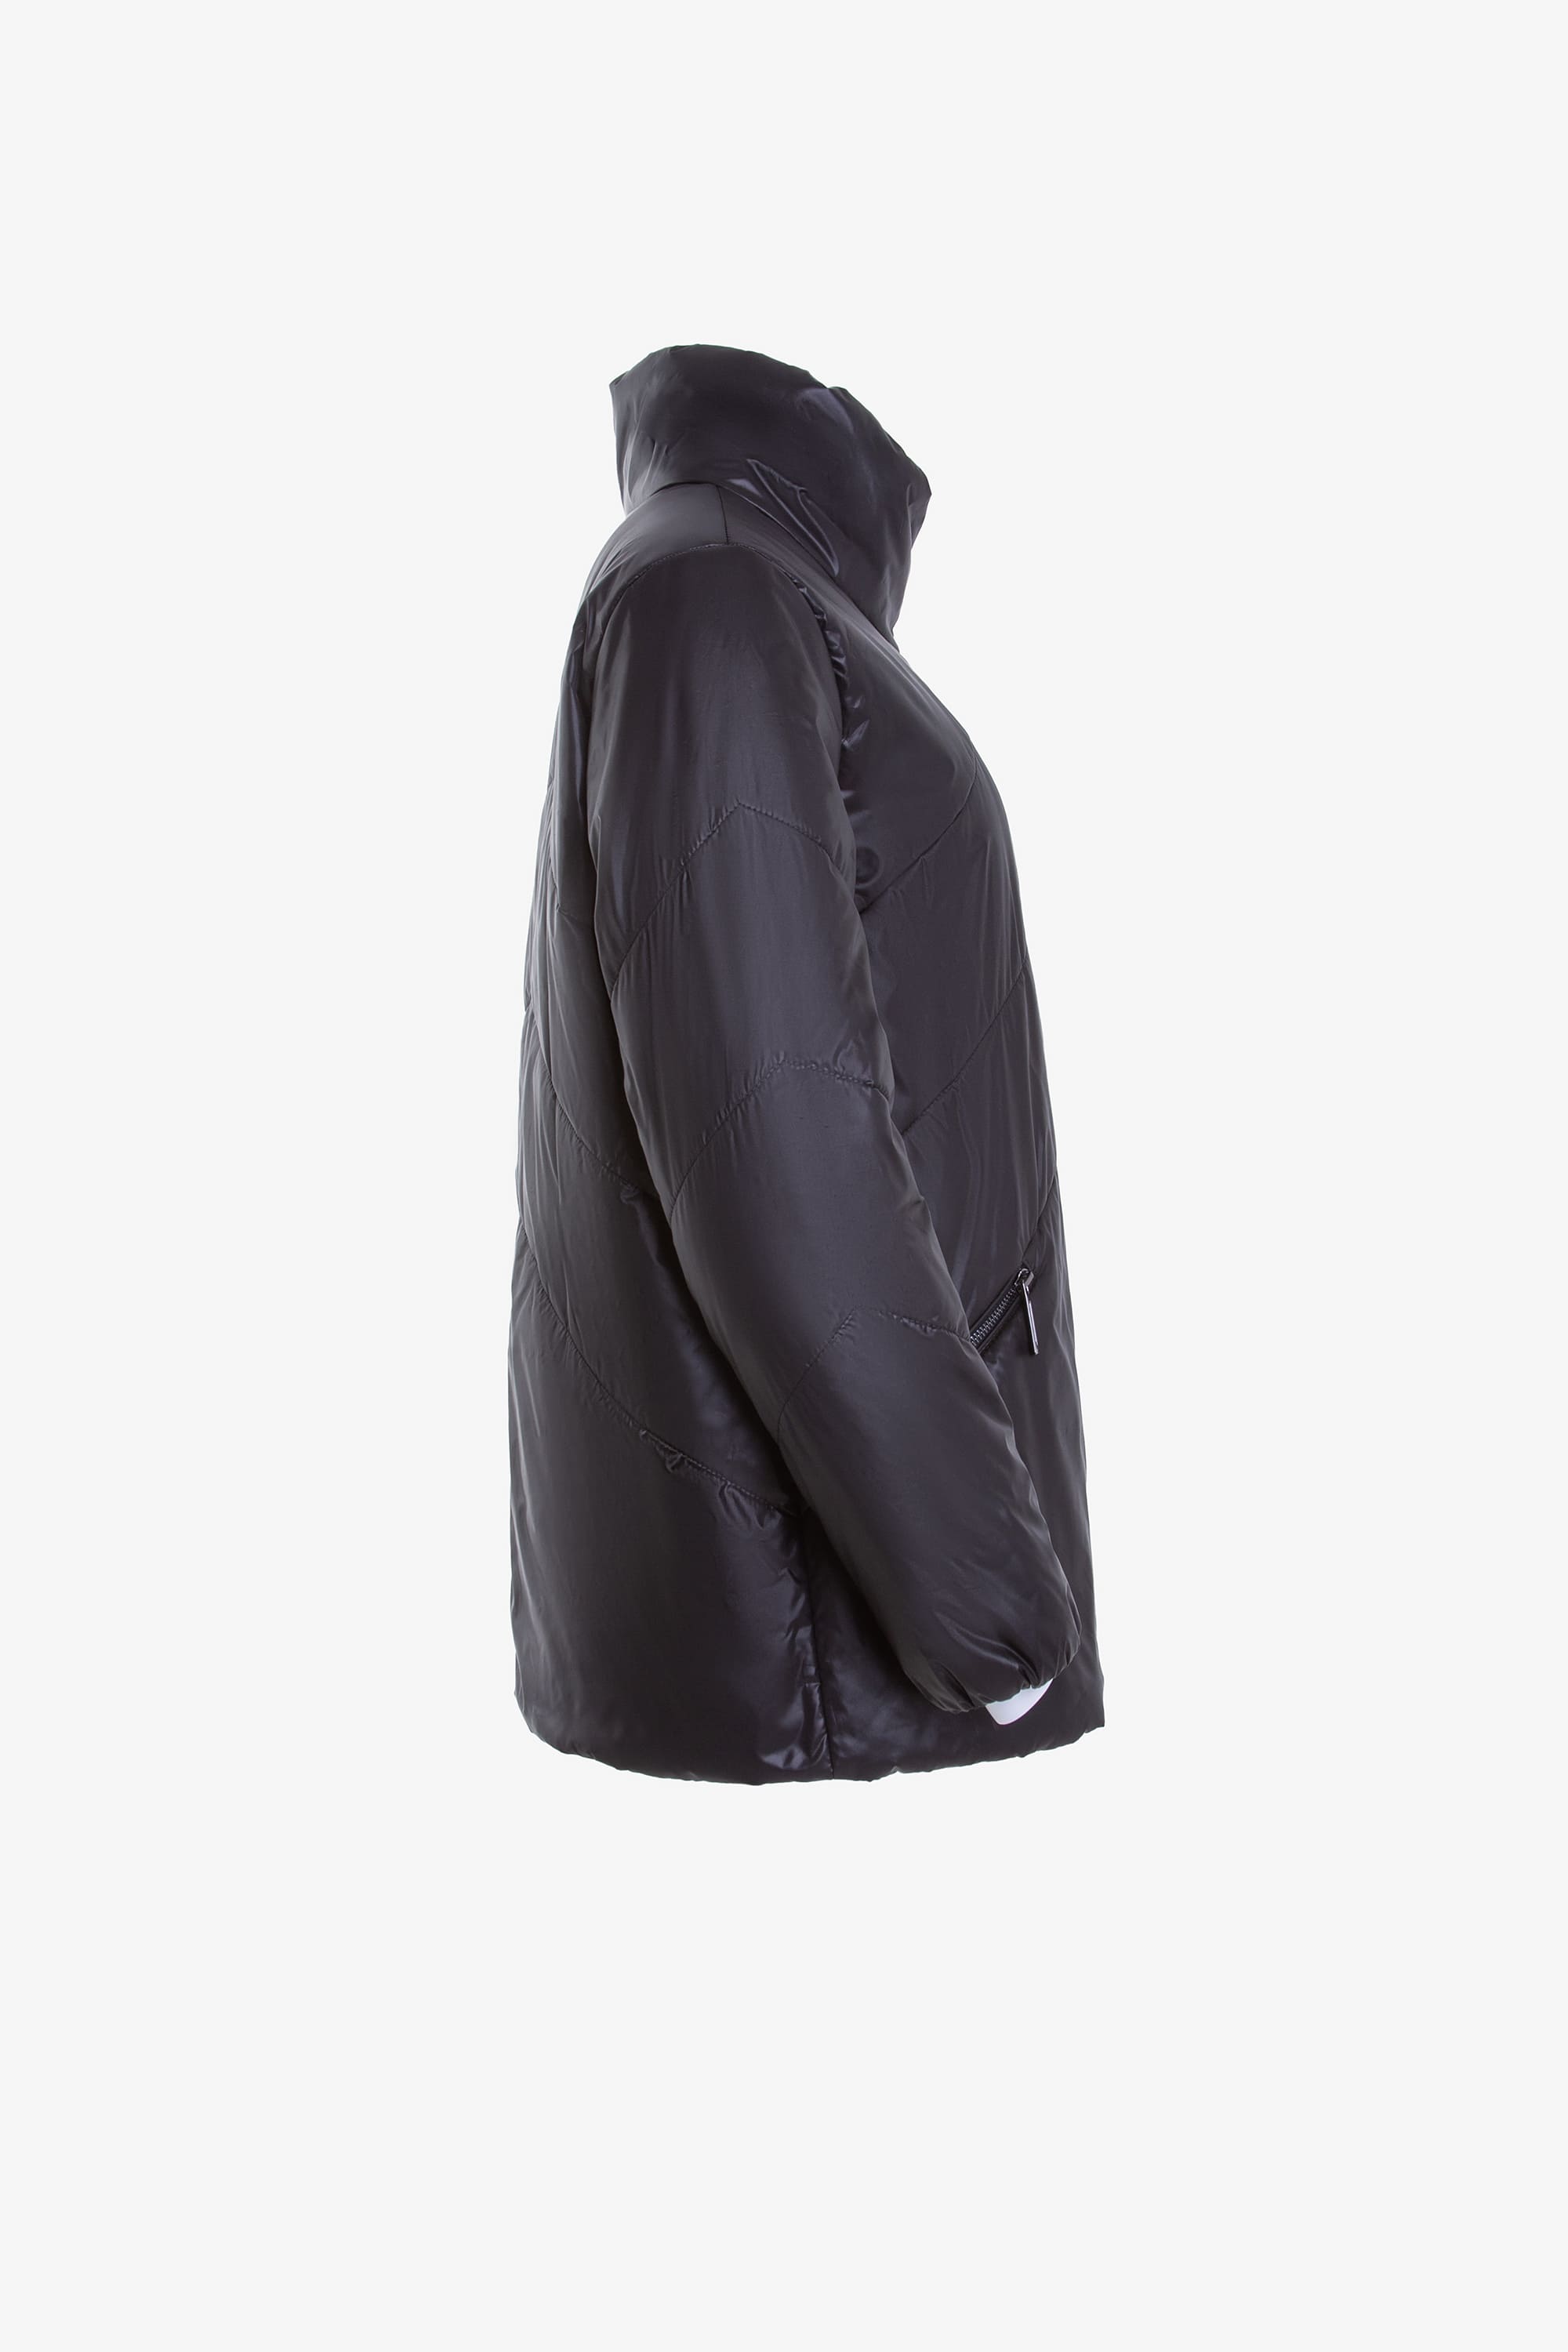 Куртка женская плащевая утепленная 4-10648-1